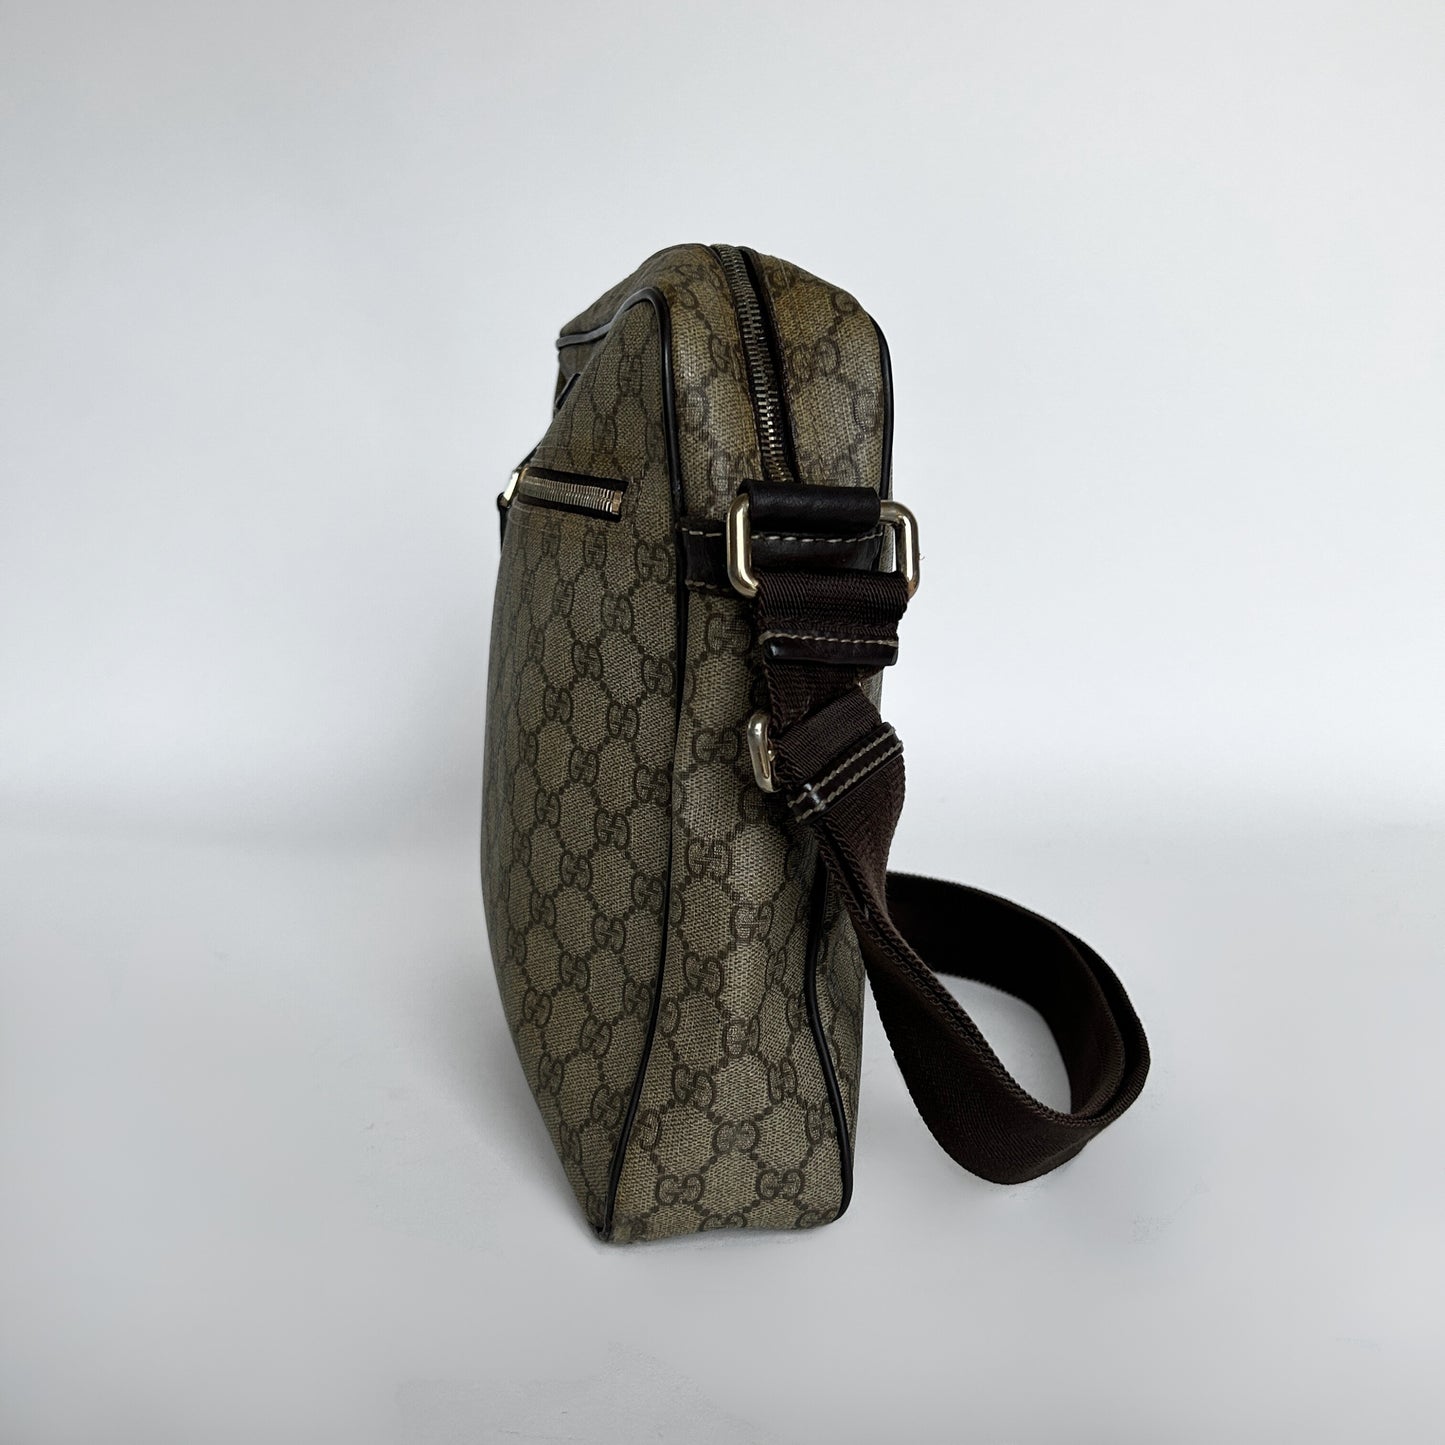 Louis Vuitton, Bags, Authentic Louis Vuitton Randonnee Pm Monogram  Vintage Backpack